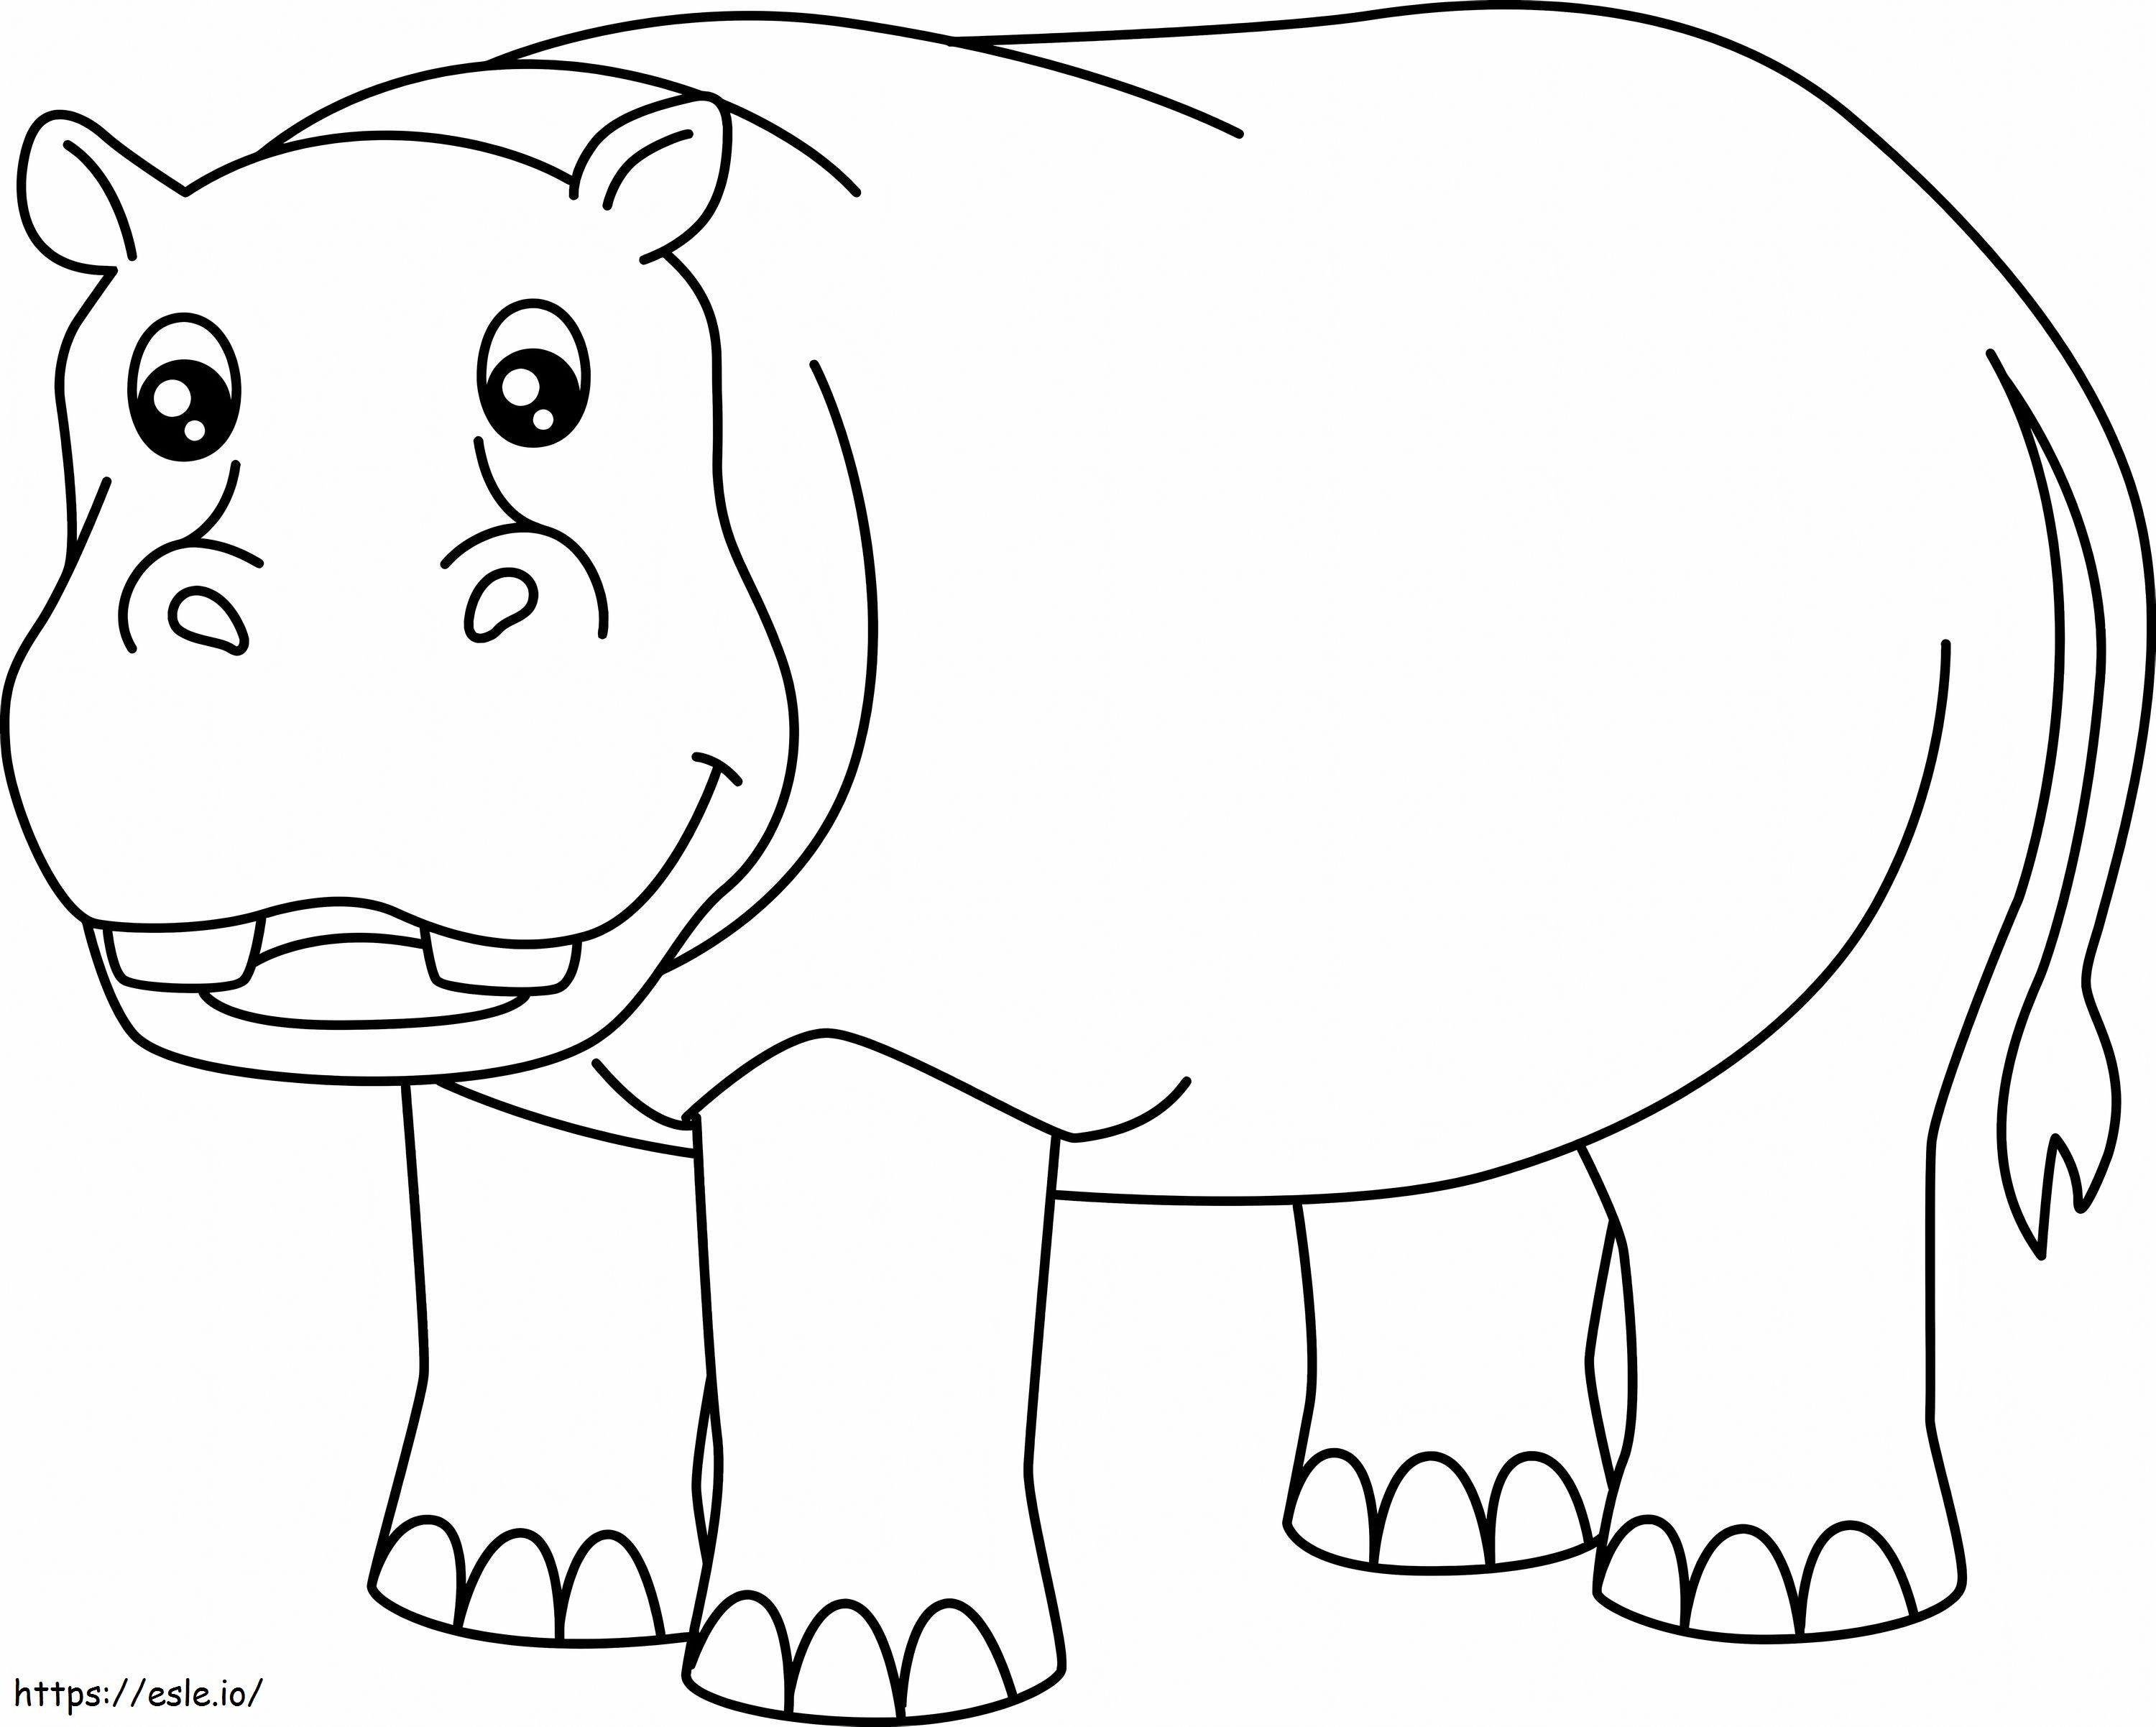 Coloriage Un hippopotame impressionnant à imprimer dessin